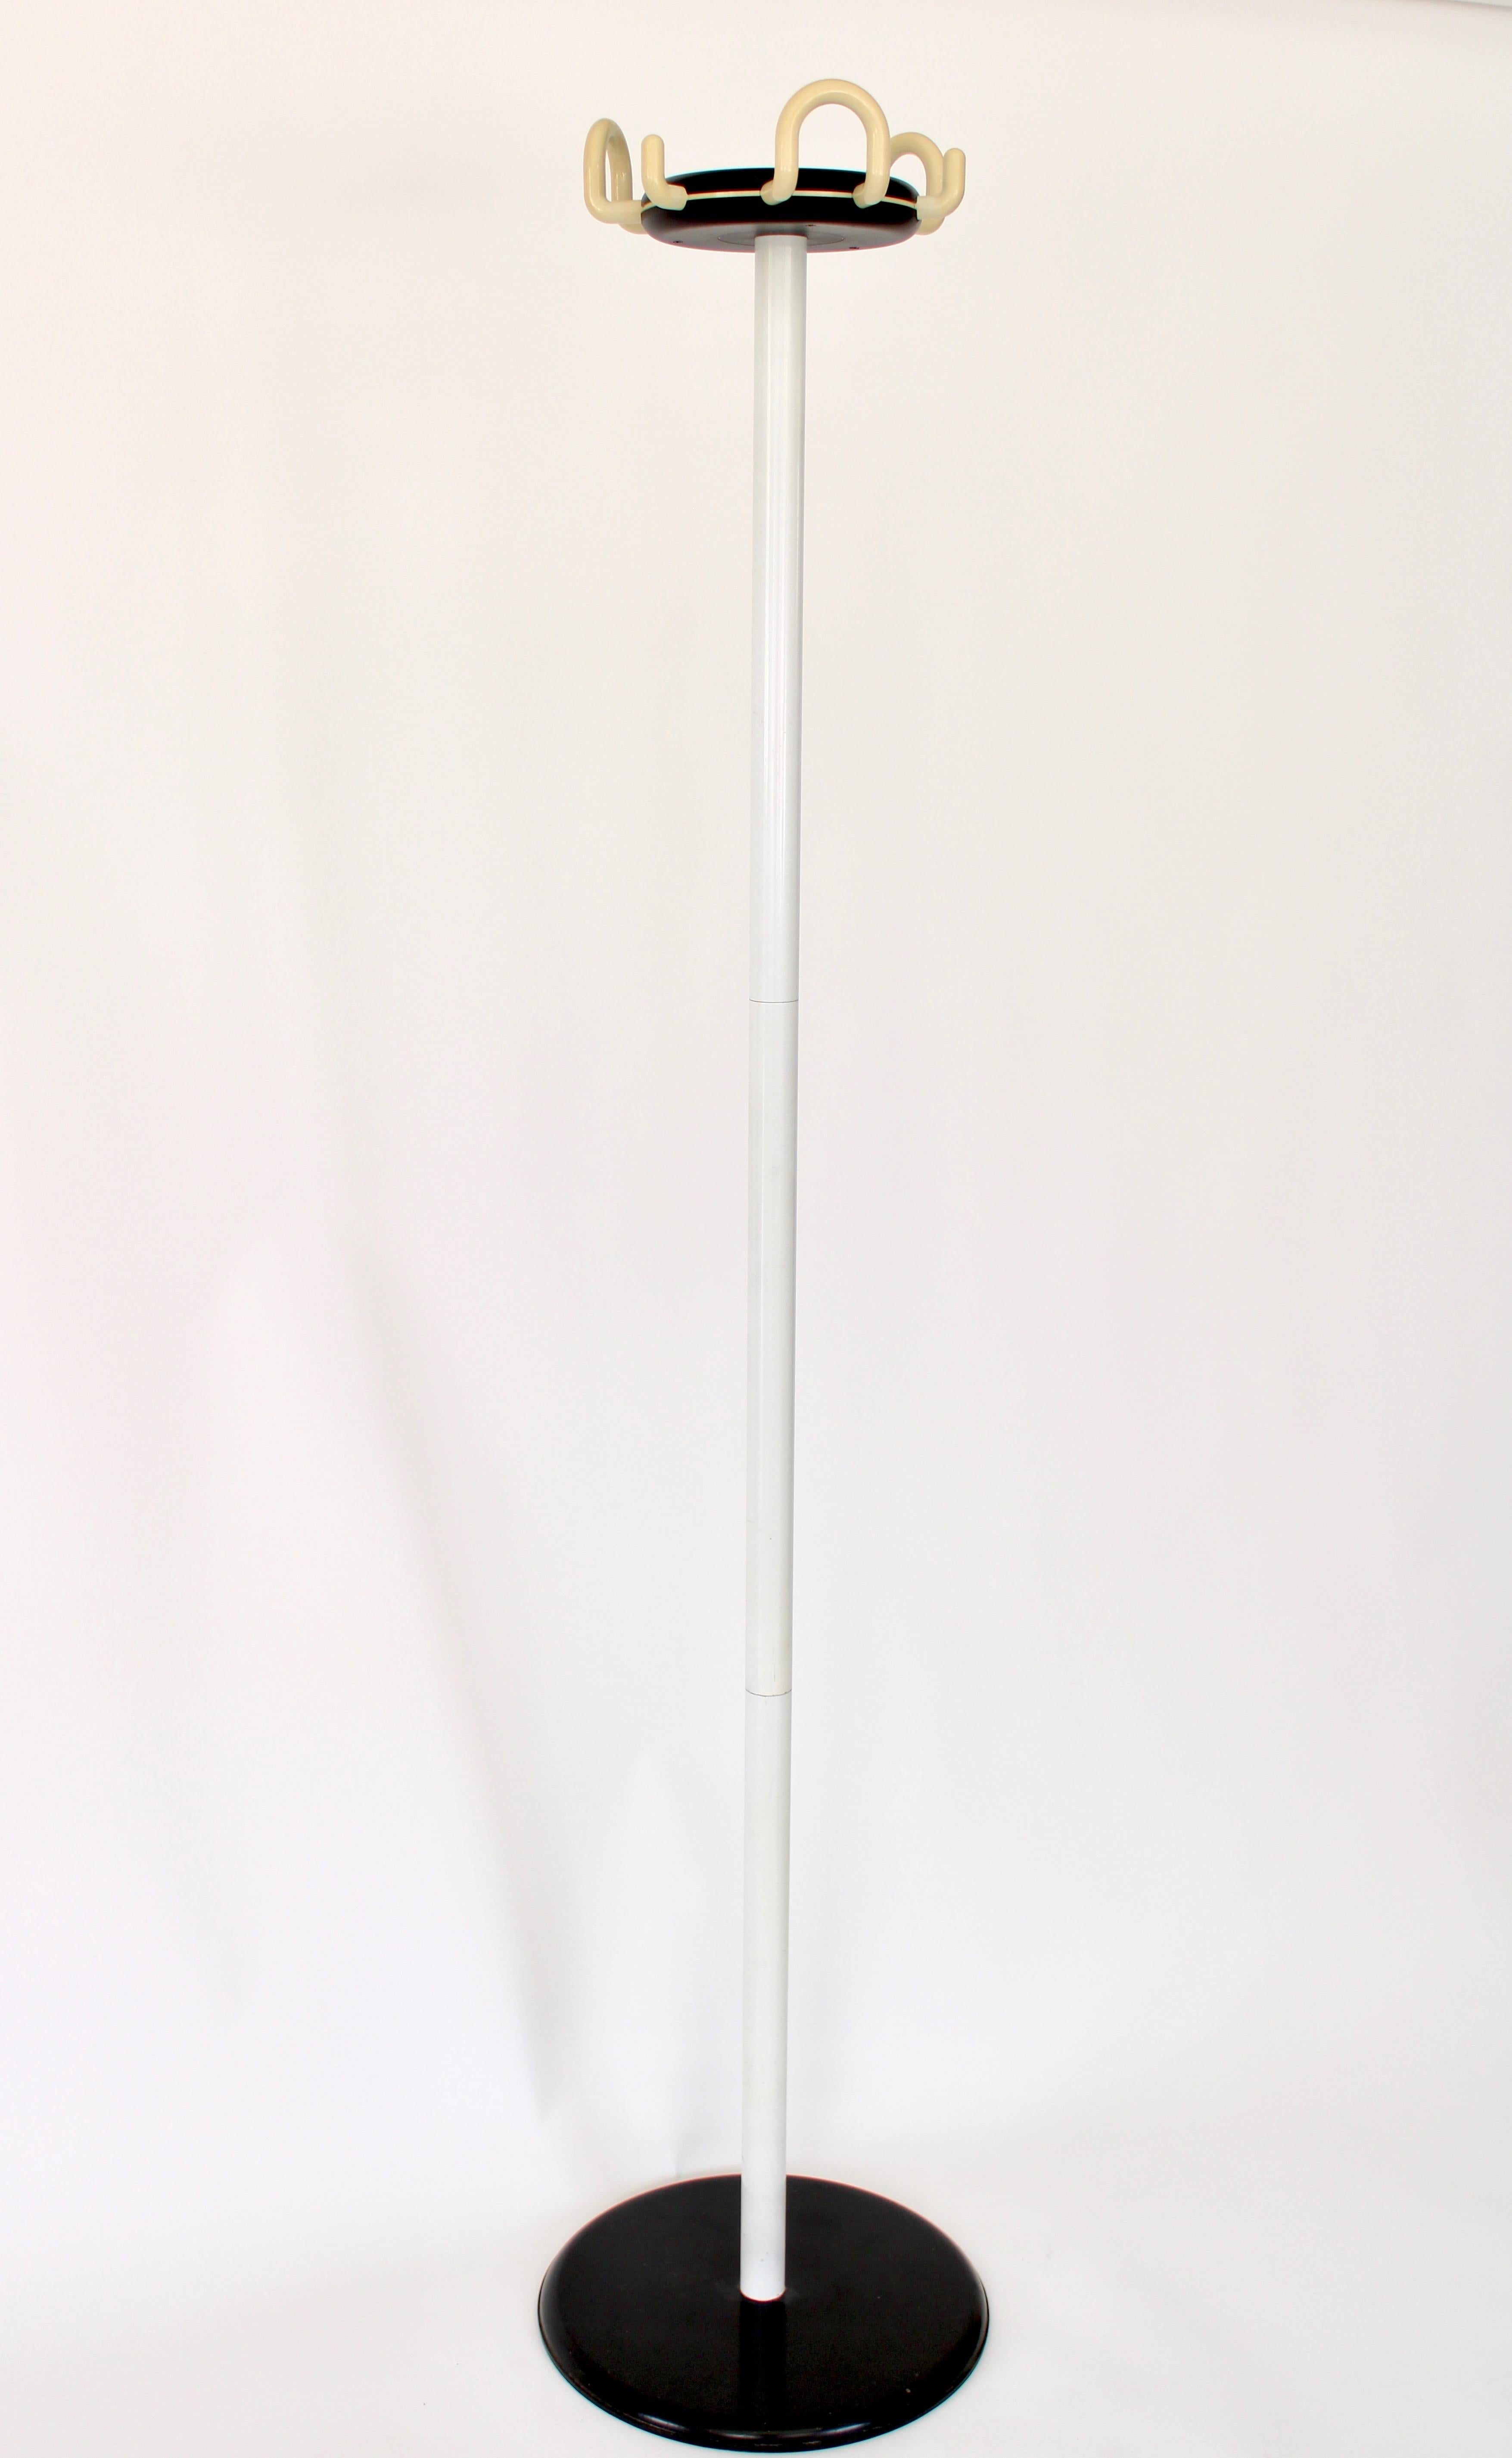 Porte-manteau design classique mais toujours à la mode modèle 999 Aiuto noir et blanc pour Rexite par Raul Barberi et Georgio Marianelli.
Tête et crochets en plastique polymère technique, jambe en acier verni ou chromé, base en acier avec couvercle